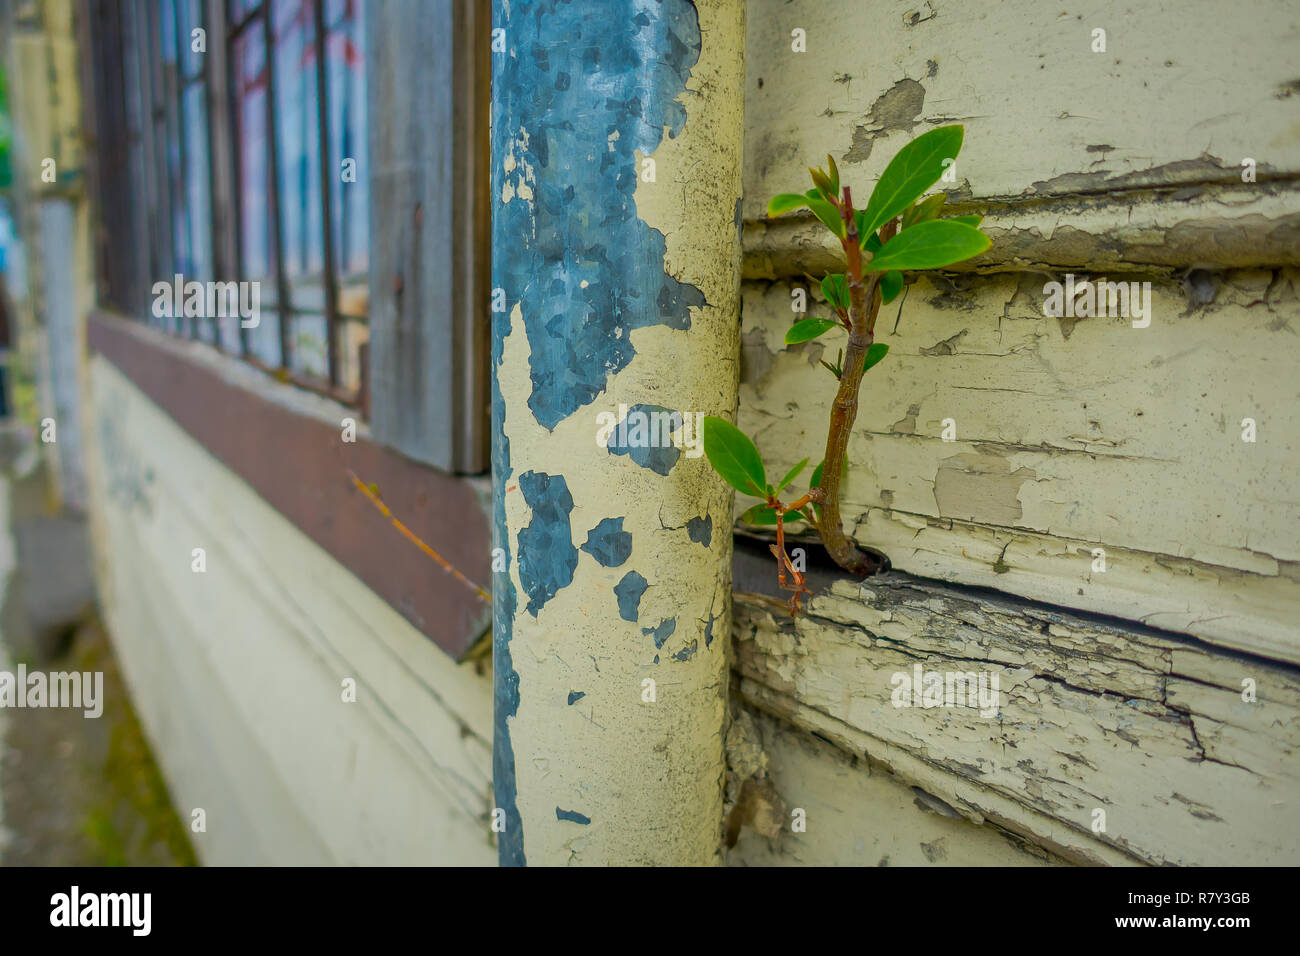 Nahaufnahme der selektiven Fokus der kleinen Pflanze von einer hölzernen Wand Struktur Gebäude in Puerto Varas in Chile wachsen Stockfoto